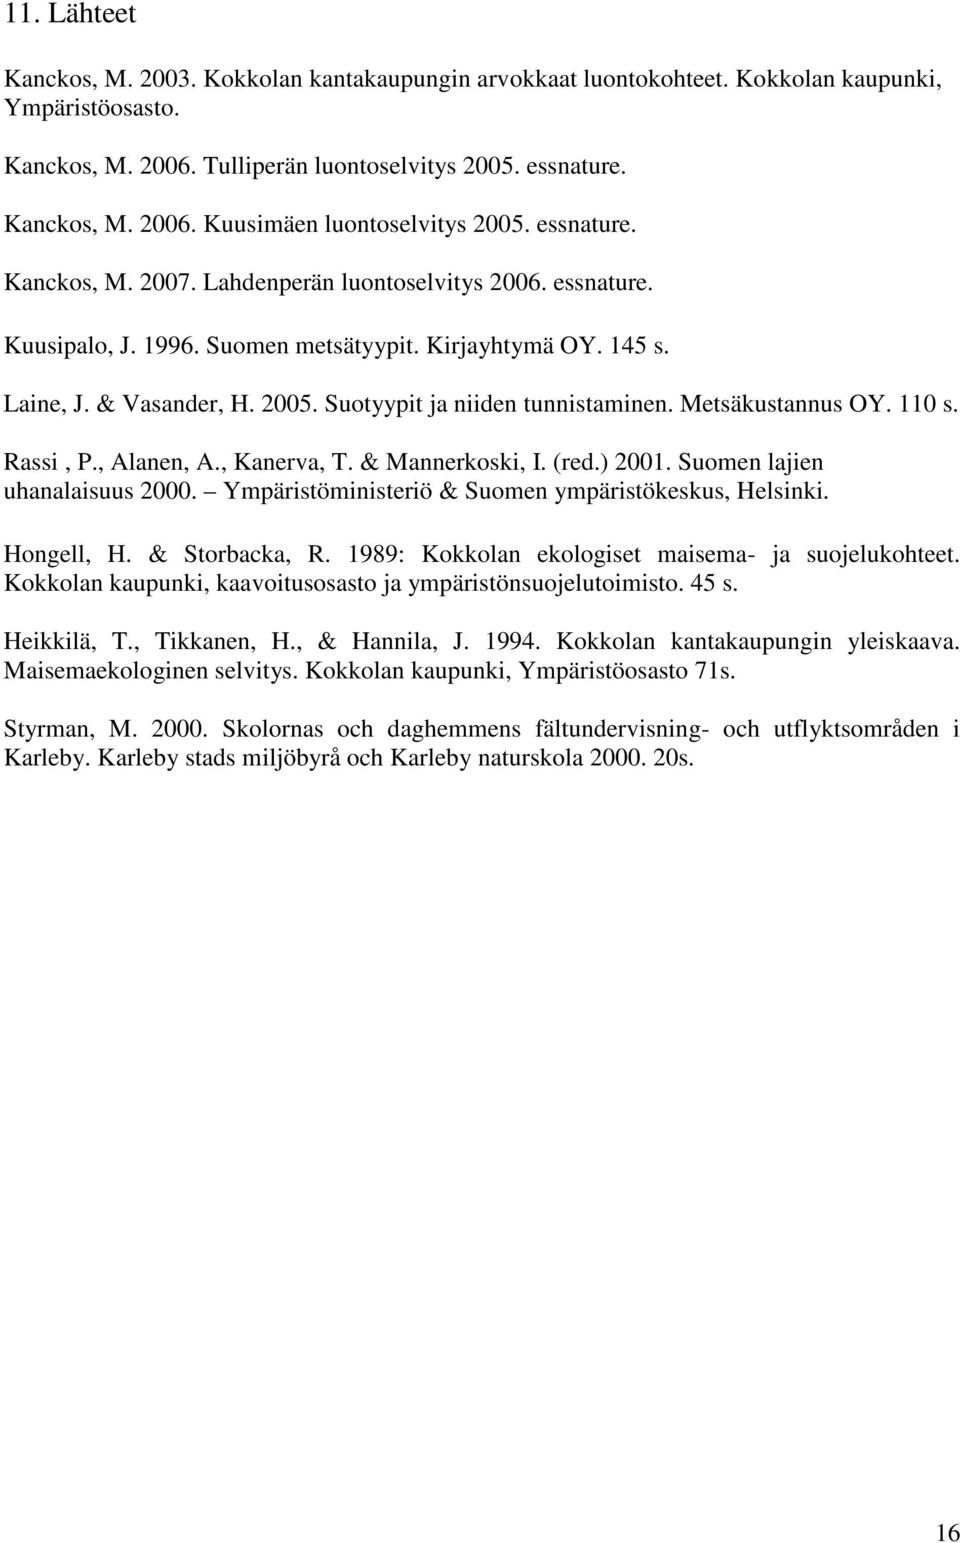 Suotyypit ja niiden tunnistaminen. Metsäkustannus OY. 110 s. Rassi, P., Alanen, A., Kanerva, T. & Mannerkoski, I. (red.) 2001. Suomen lajien uhanalaisuus 2000.